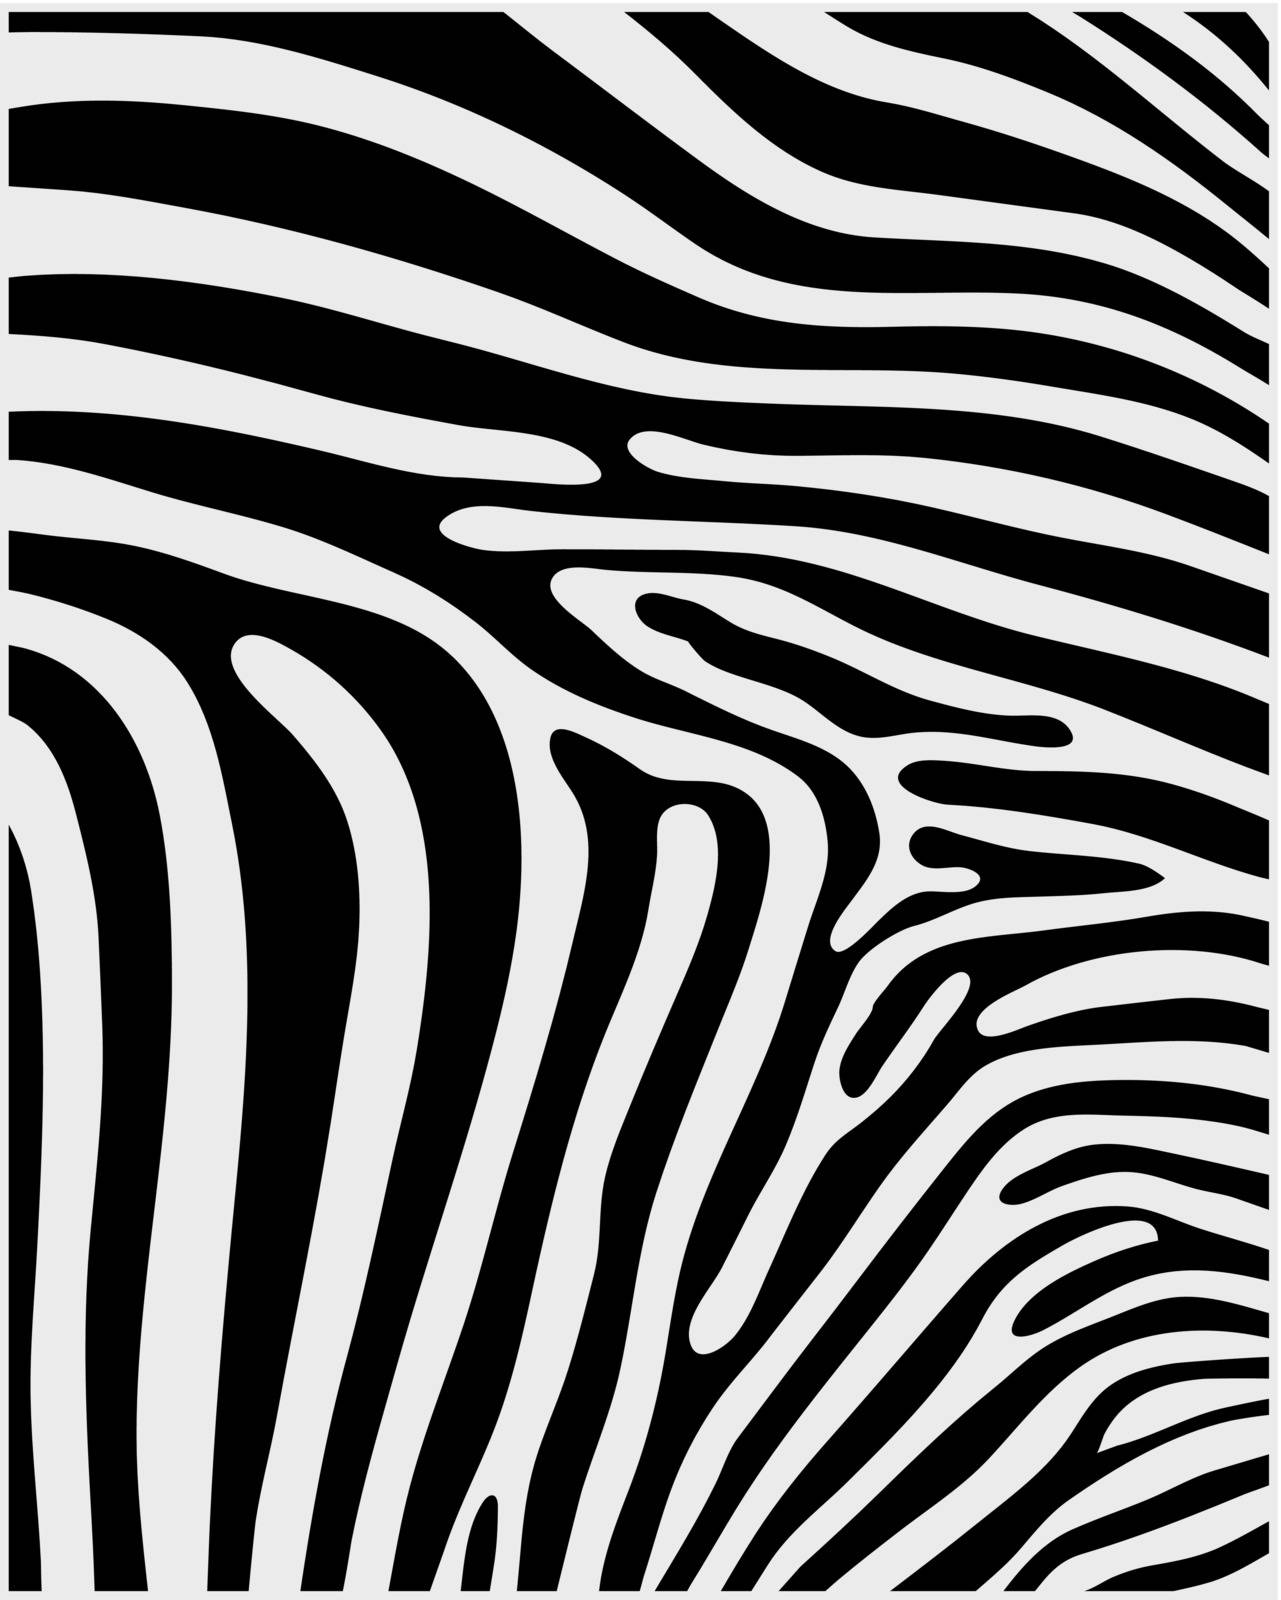 skin of zebra 2 by ratkomat